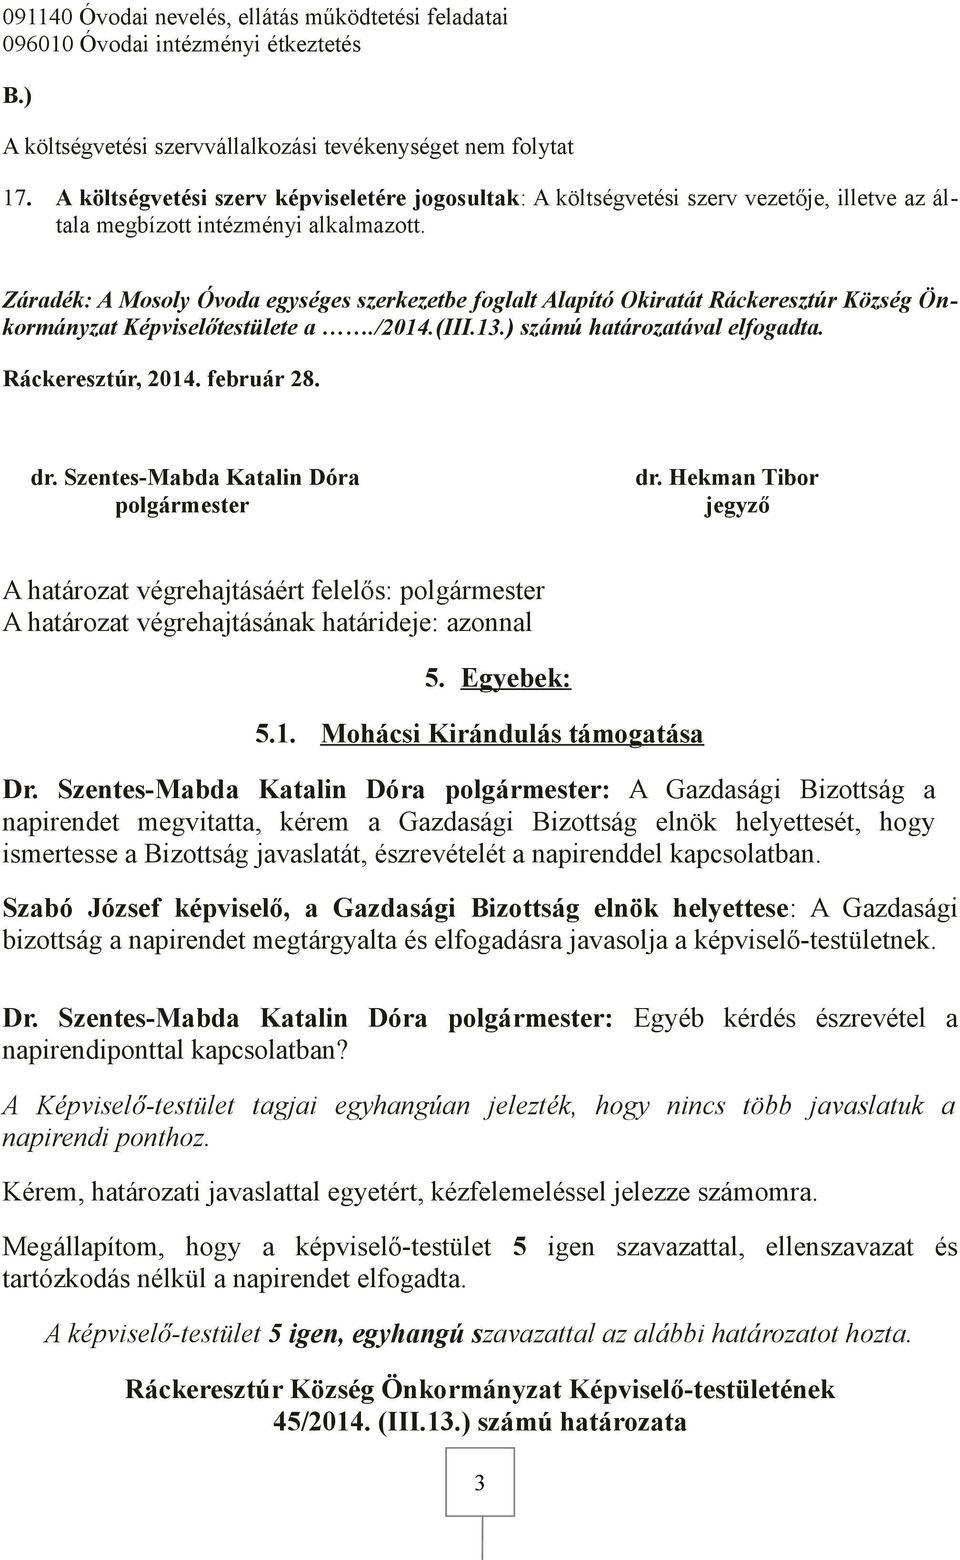 Záradék: A Mosoly Óvoda egységes szerkezetbe foglalt Alapító Okiratát Ráckeresztúr Község Önkormányzat Képviselőtestülete a./2014.(iii.1.) számú határozatával elfogadta.